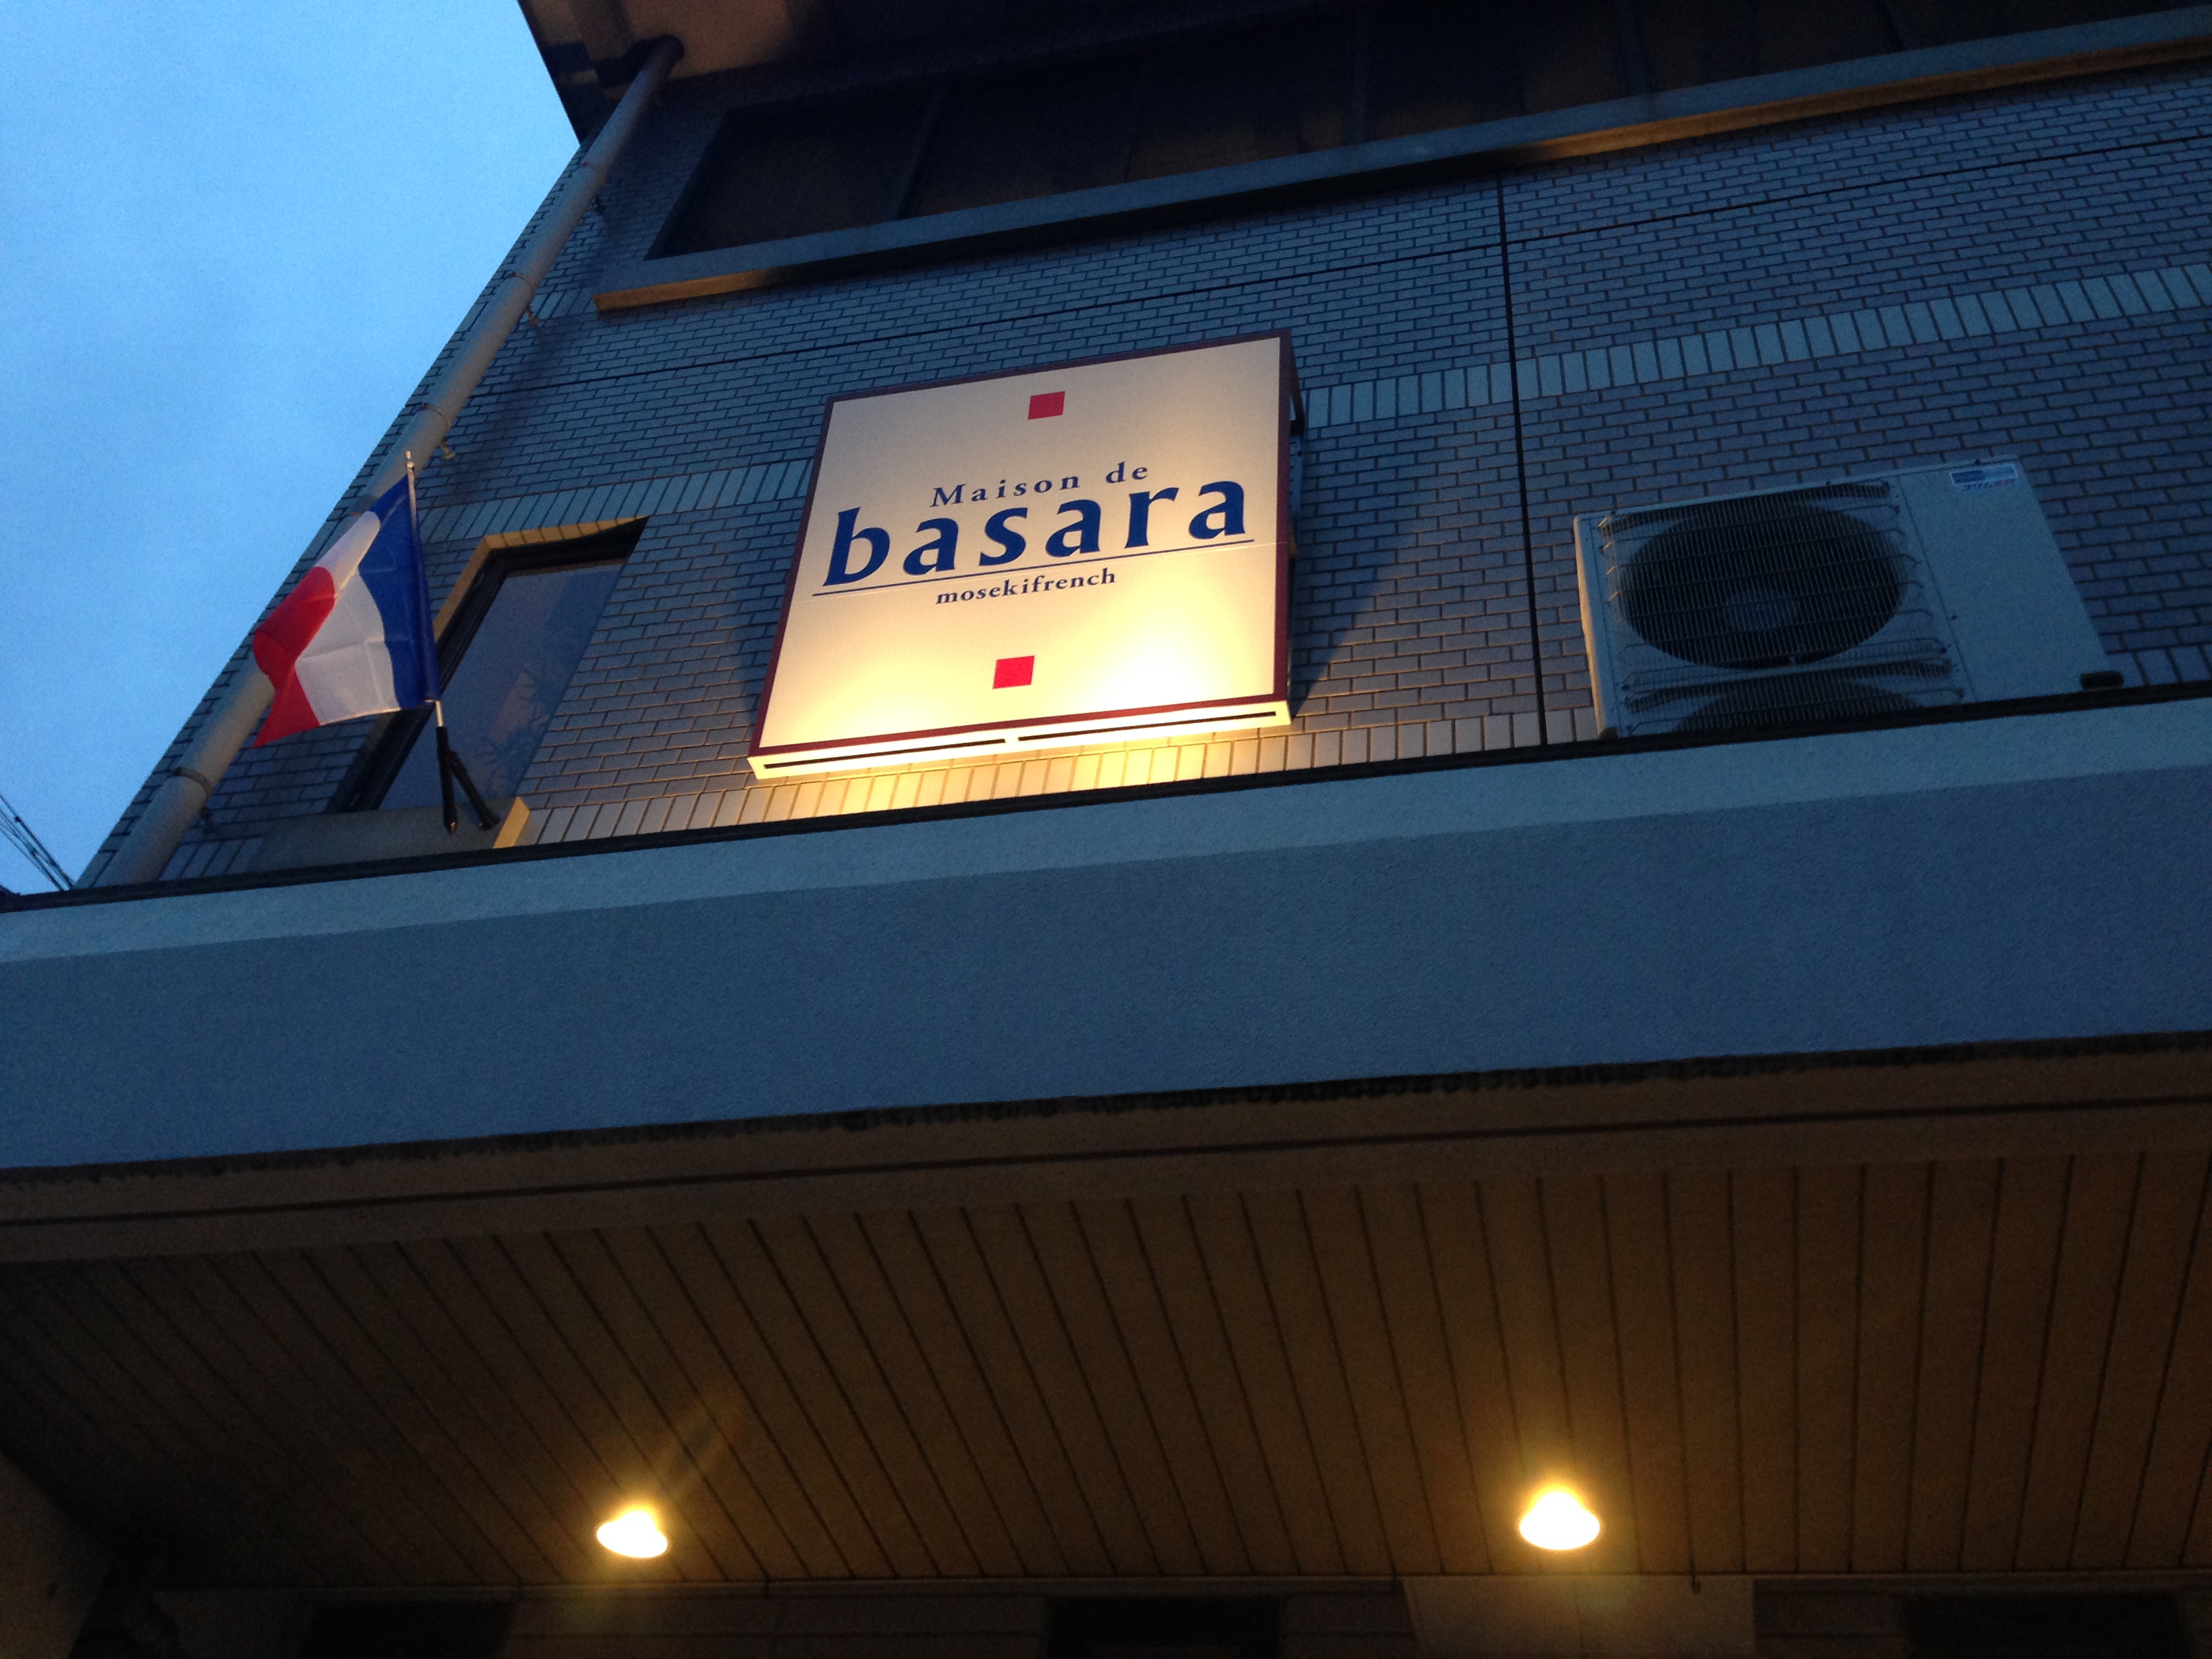 Maison de basara店舗電気工事　のサムネイル画像1